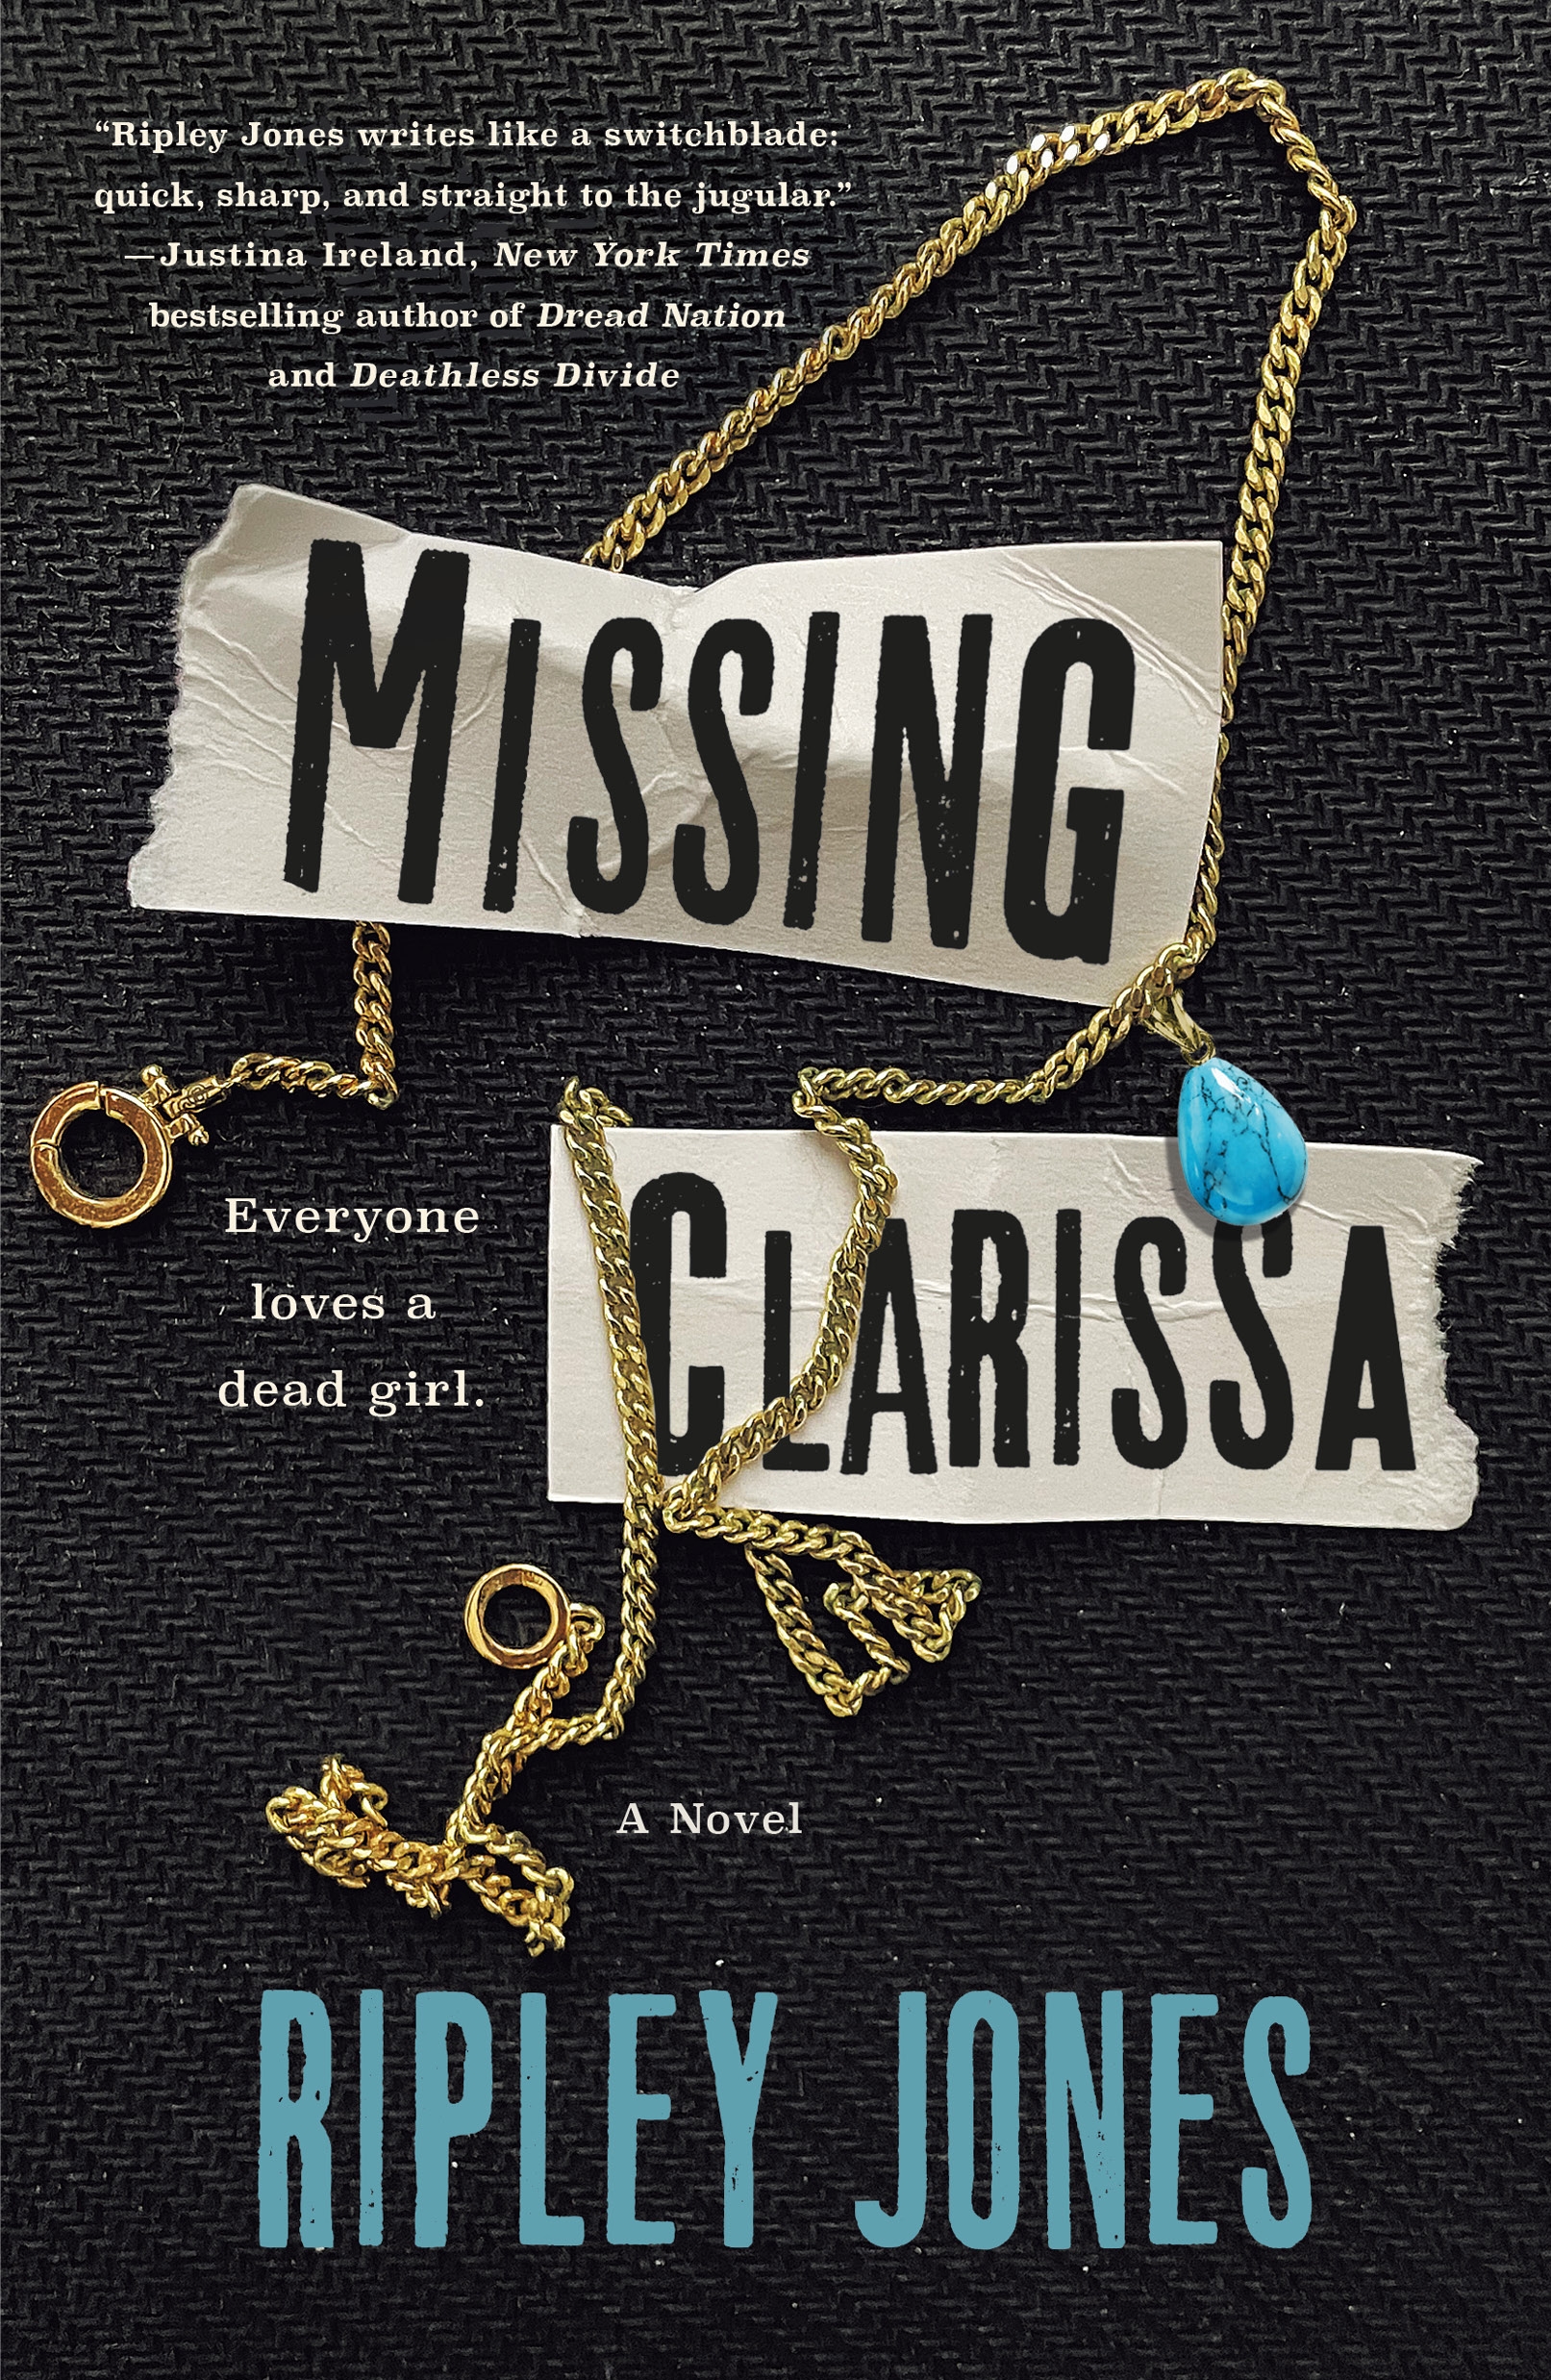 Missing Clarissa cover image